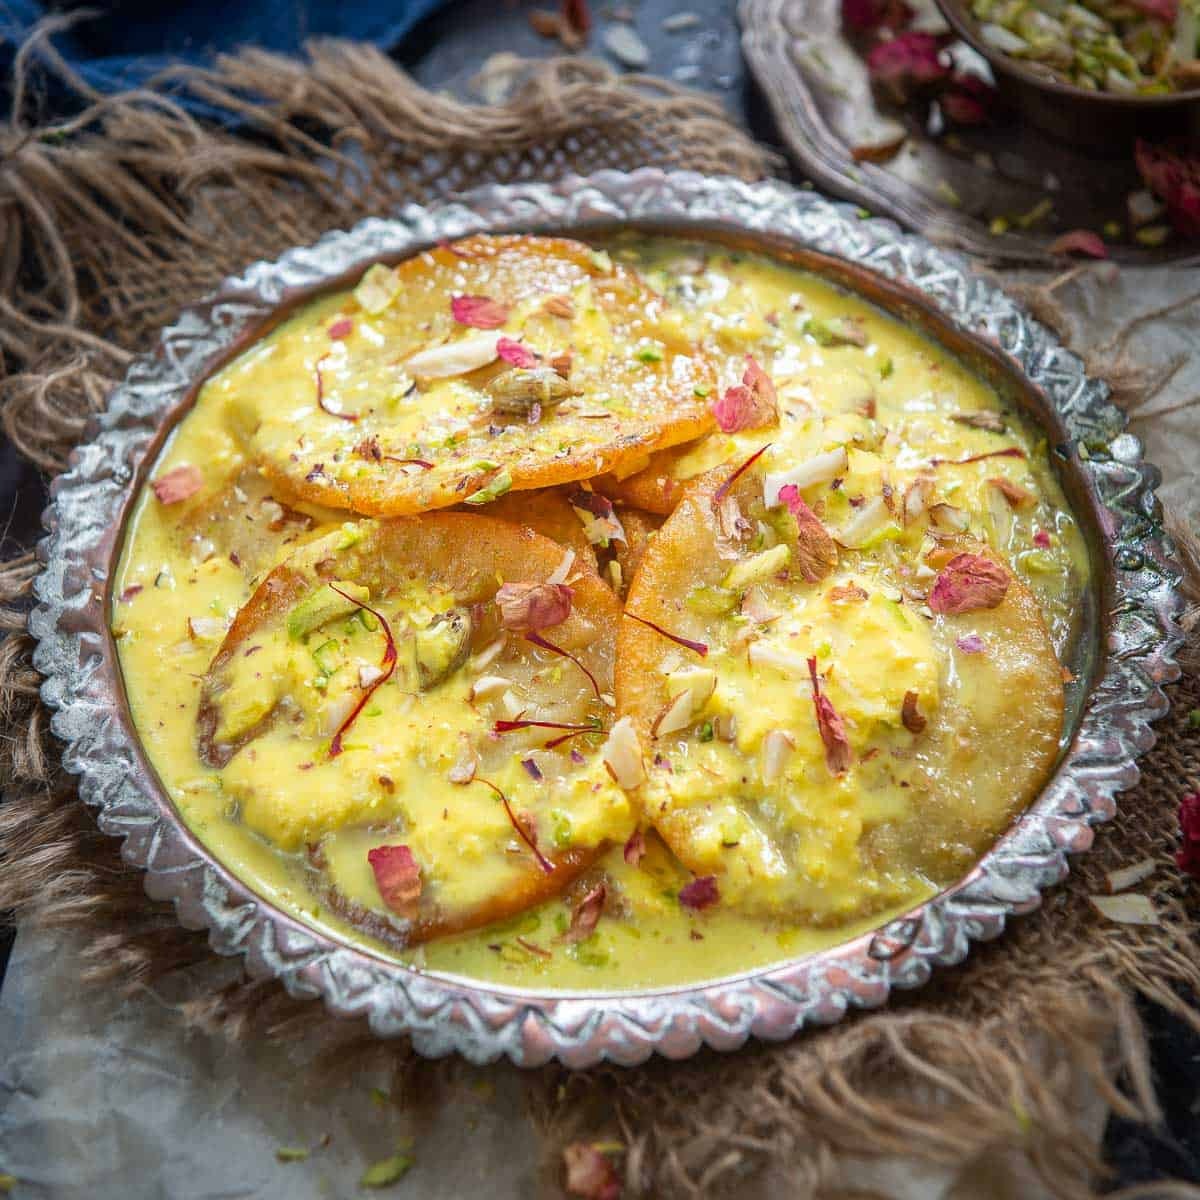 Diwali 2023: दिवाली पर मेहमानों की आवाजाही लगी रहती है। ऐसे में अगर आप पहले से पकवान बनाकर तैयार रखें तो आपका समय बच सकता है। इस दिवाली बाजार से पकवान लाने की बजाय खुद से घर पर बनाए।  